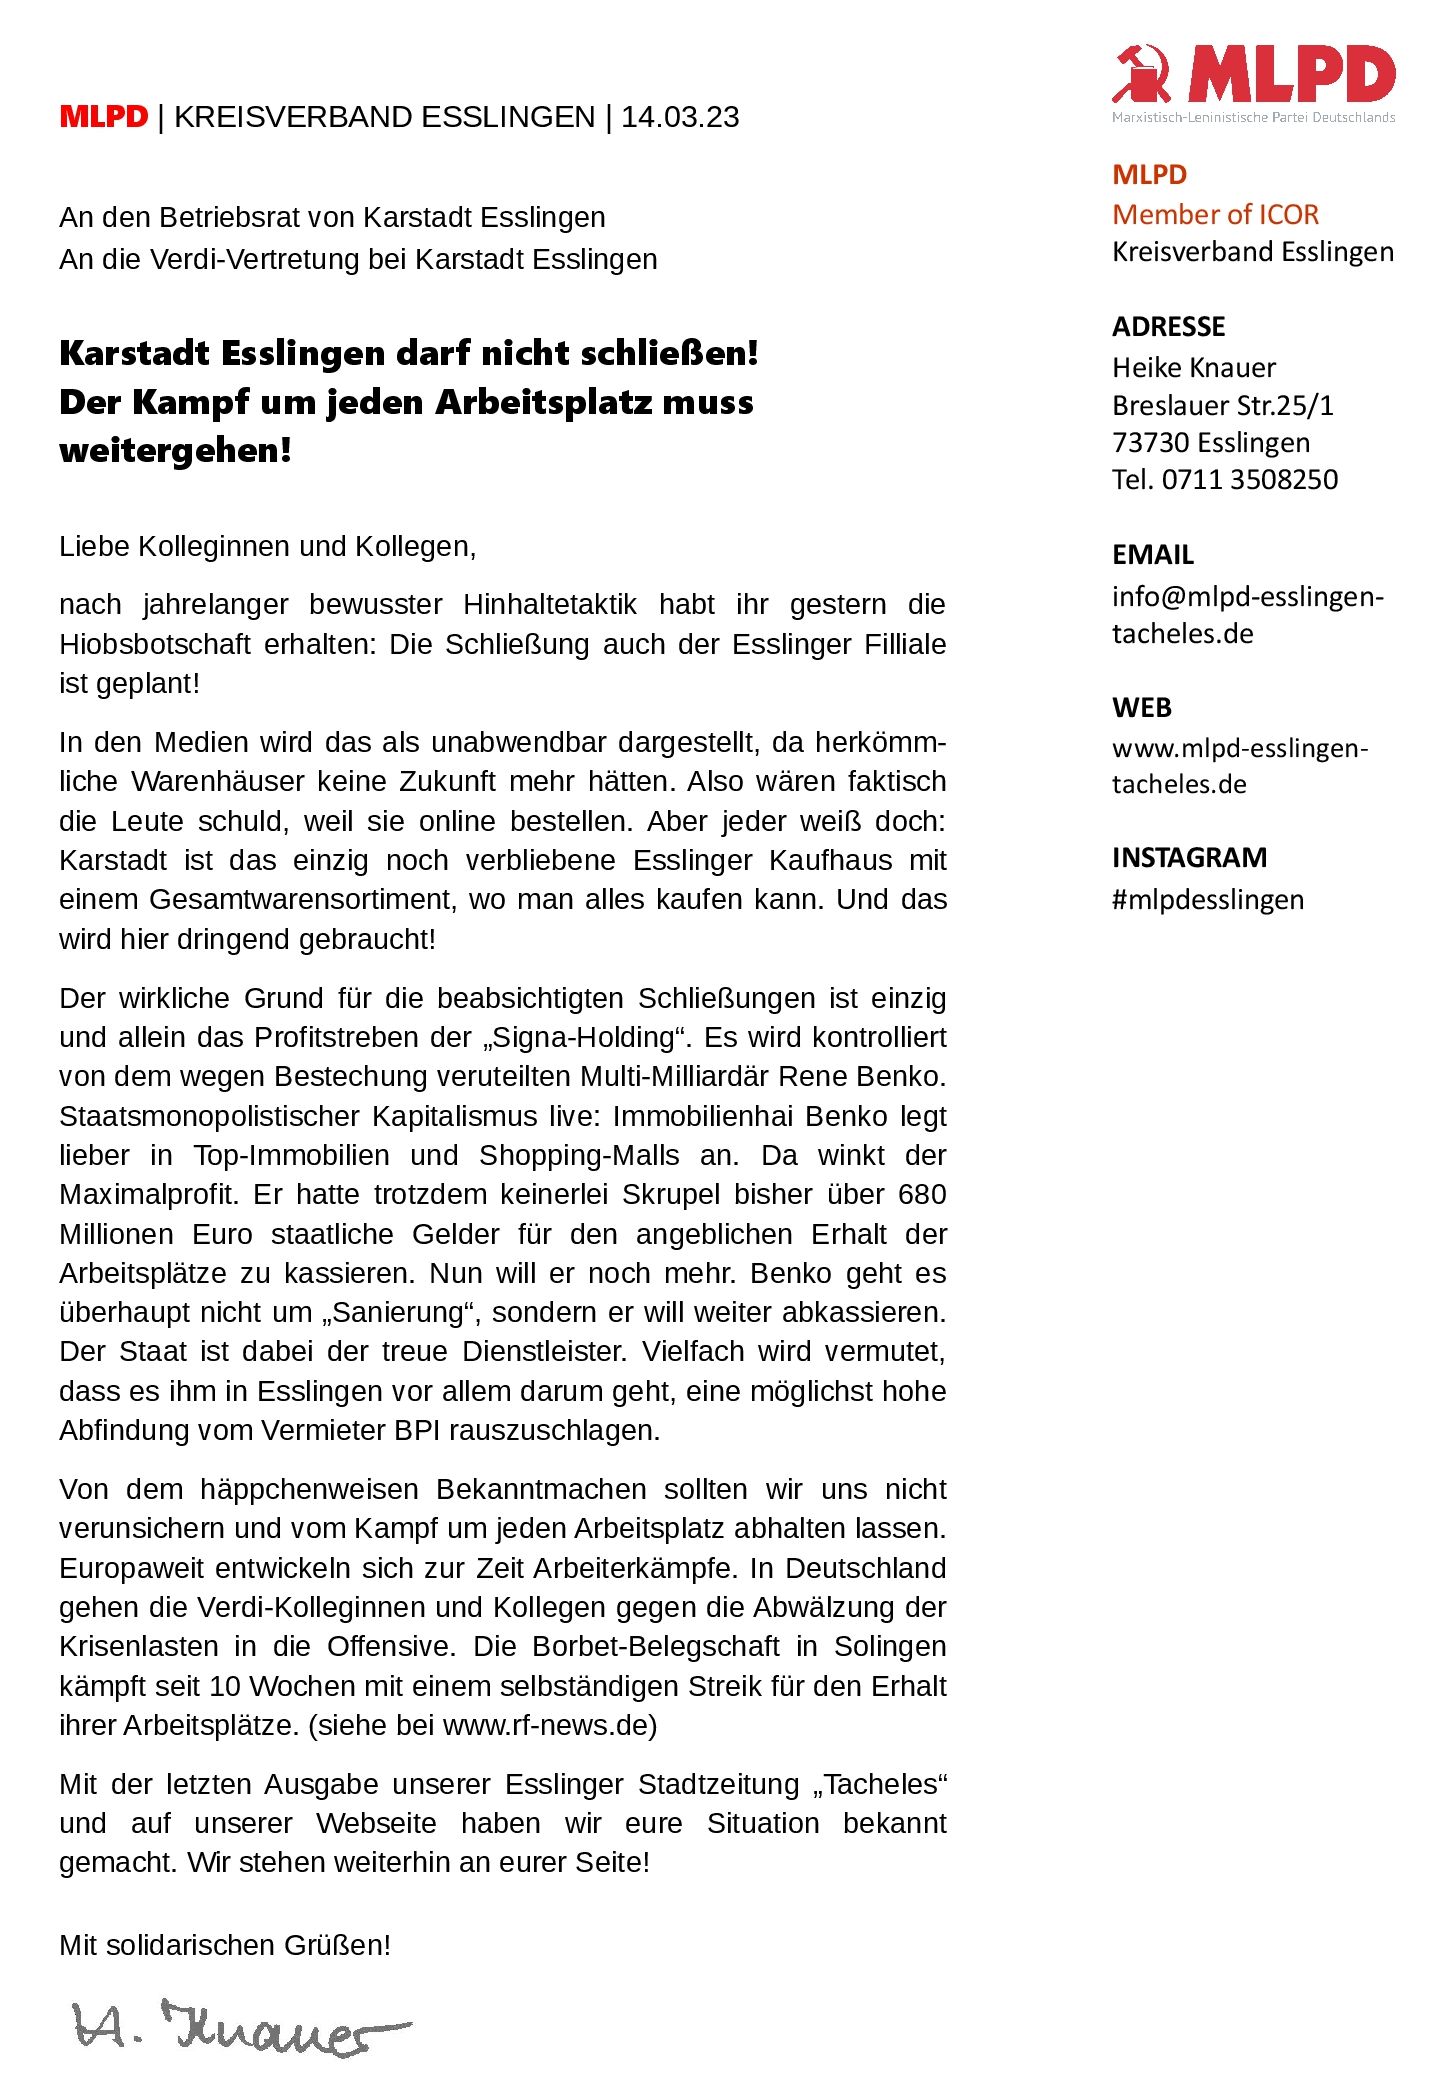 MLPD Esslingen - Solidaritätserklärung Karstadt Esslingen